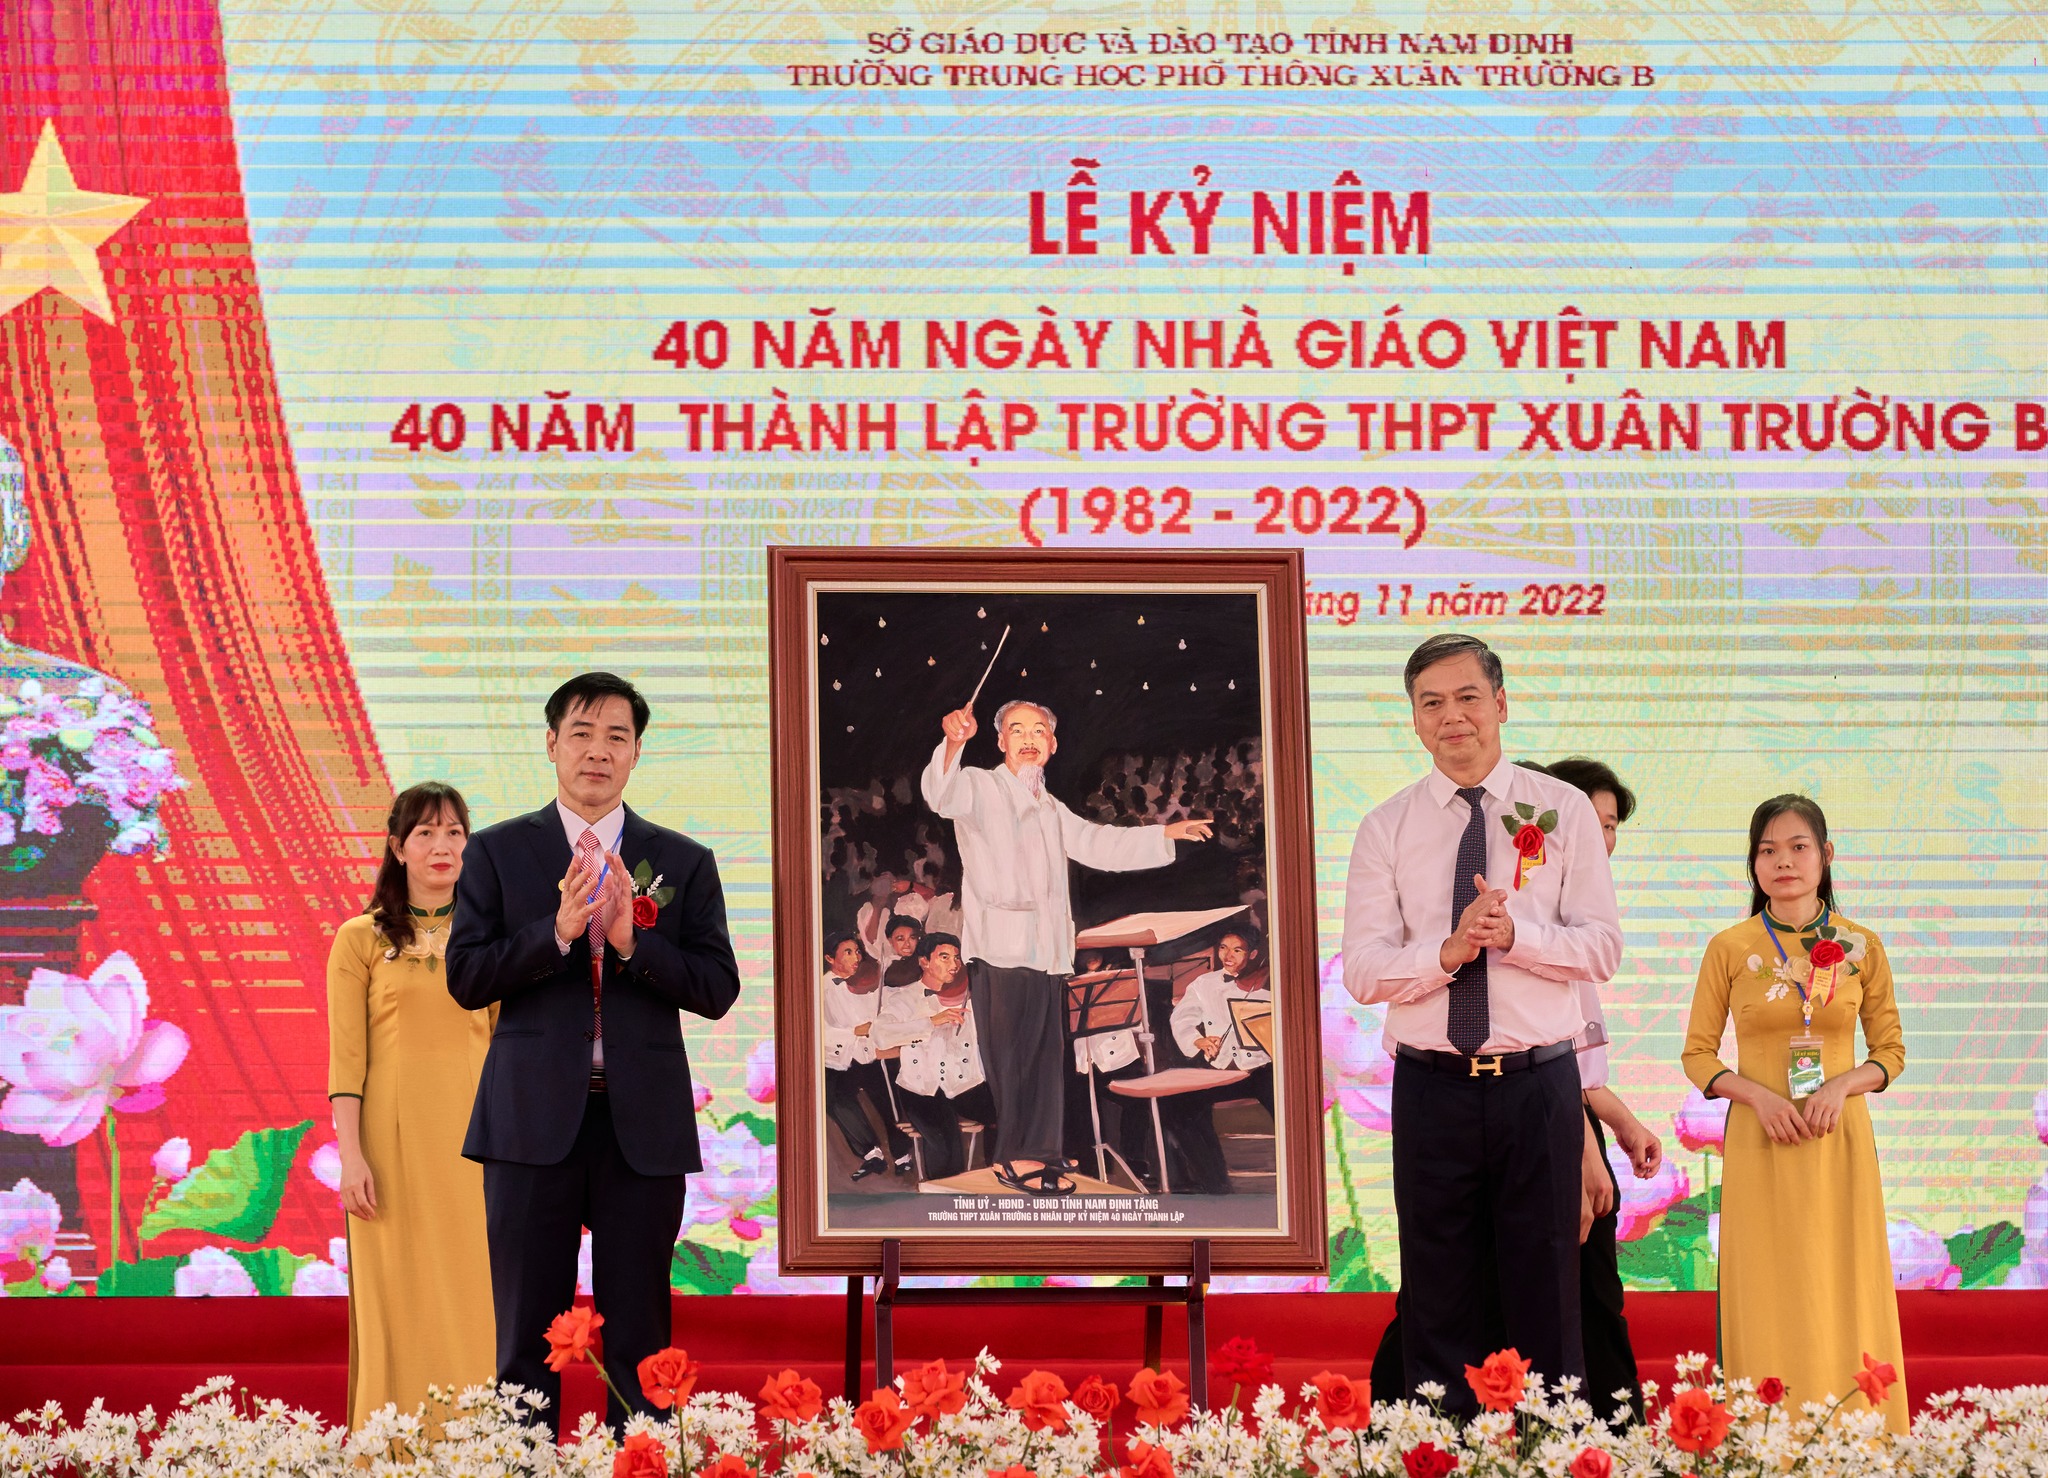 Trường THPT Xuân Trường B (Nam Định): 40 năm đầy tự hào và phát triển